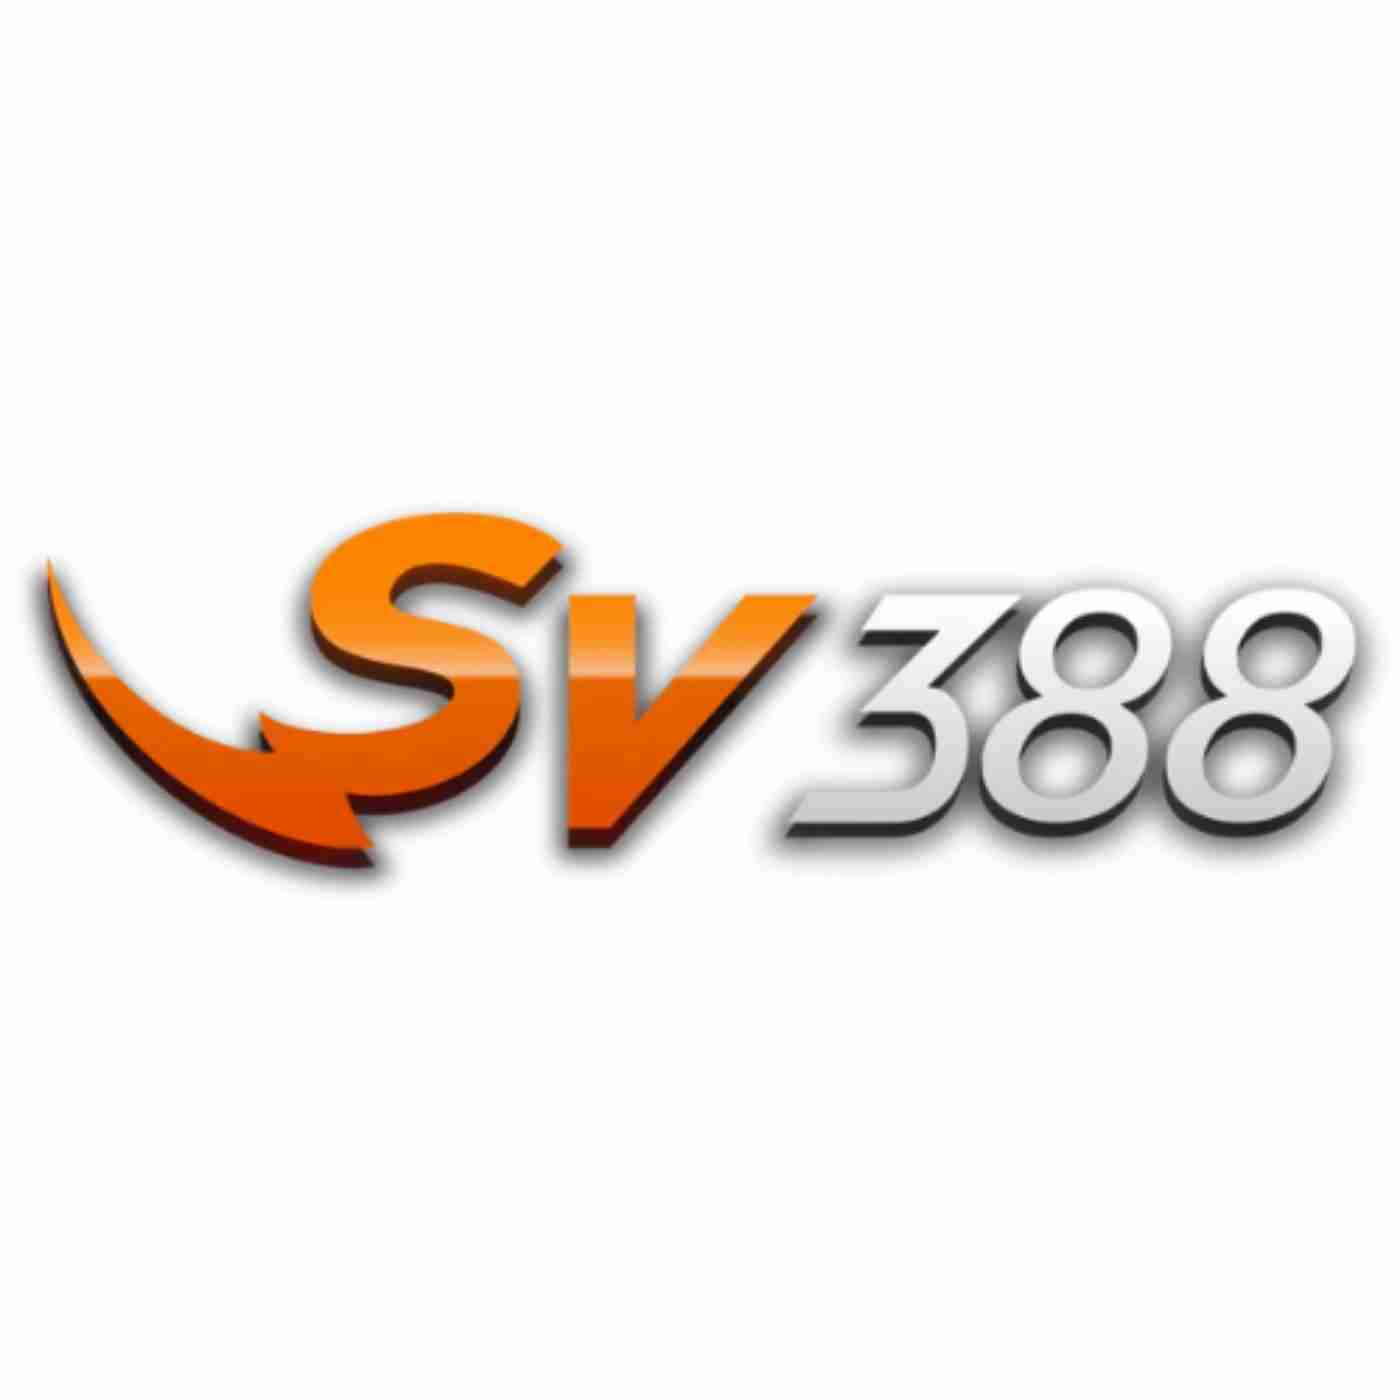 Sv388 Cá cược đá gà trực tiếp